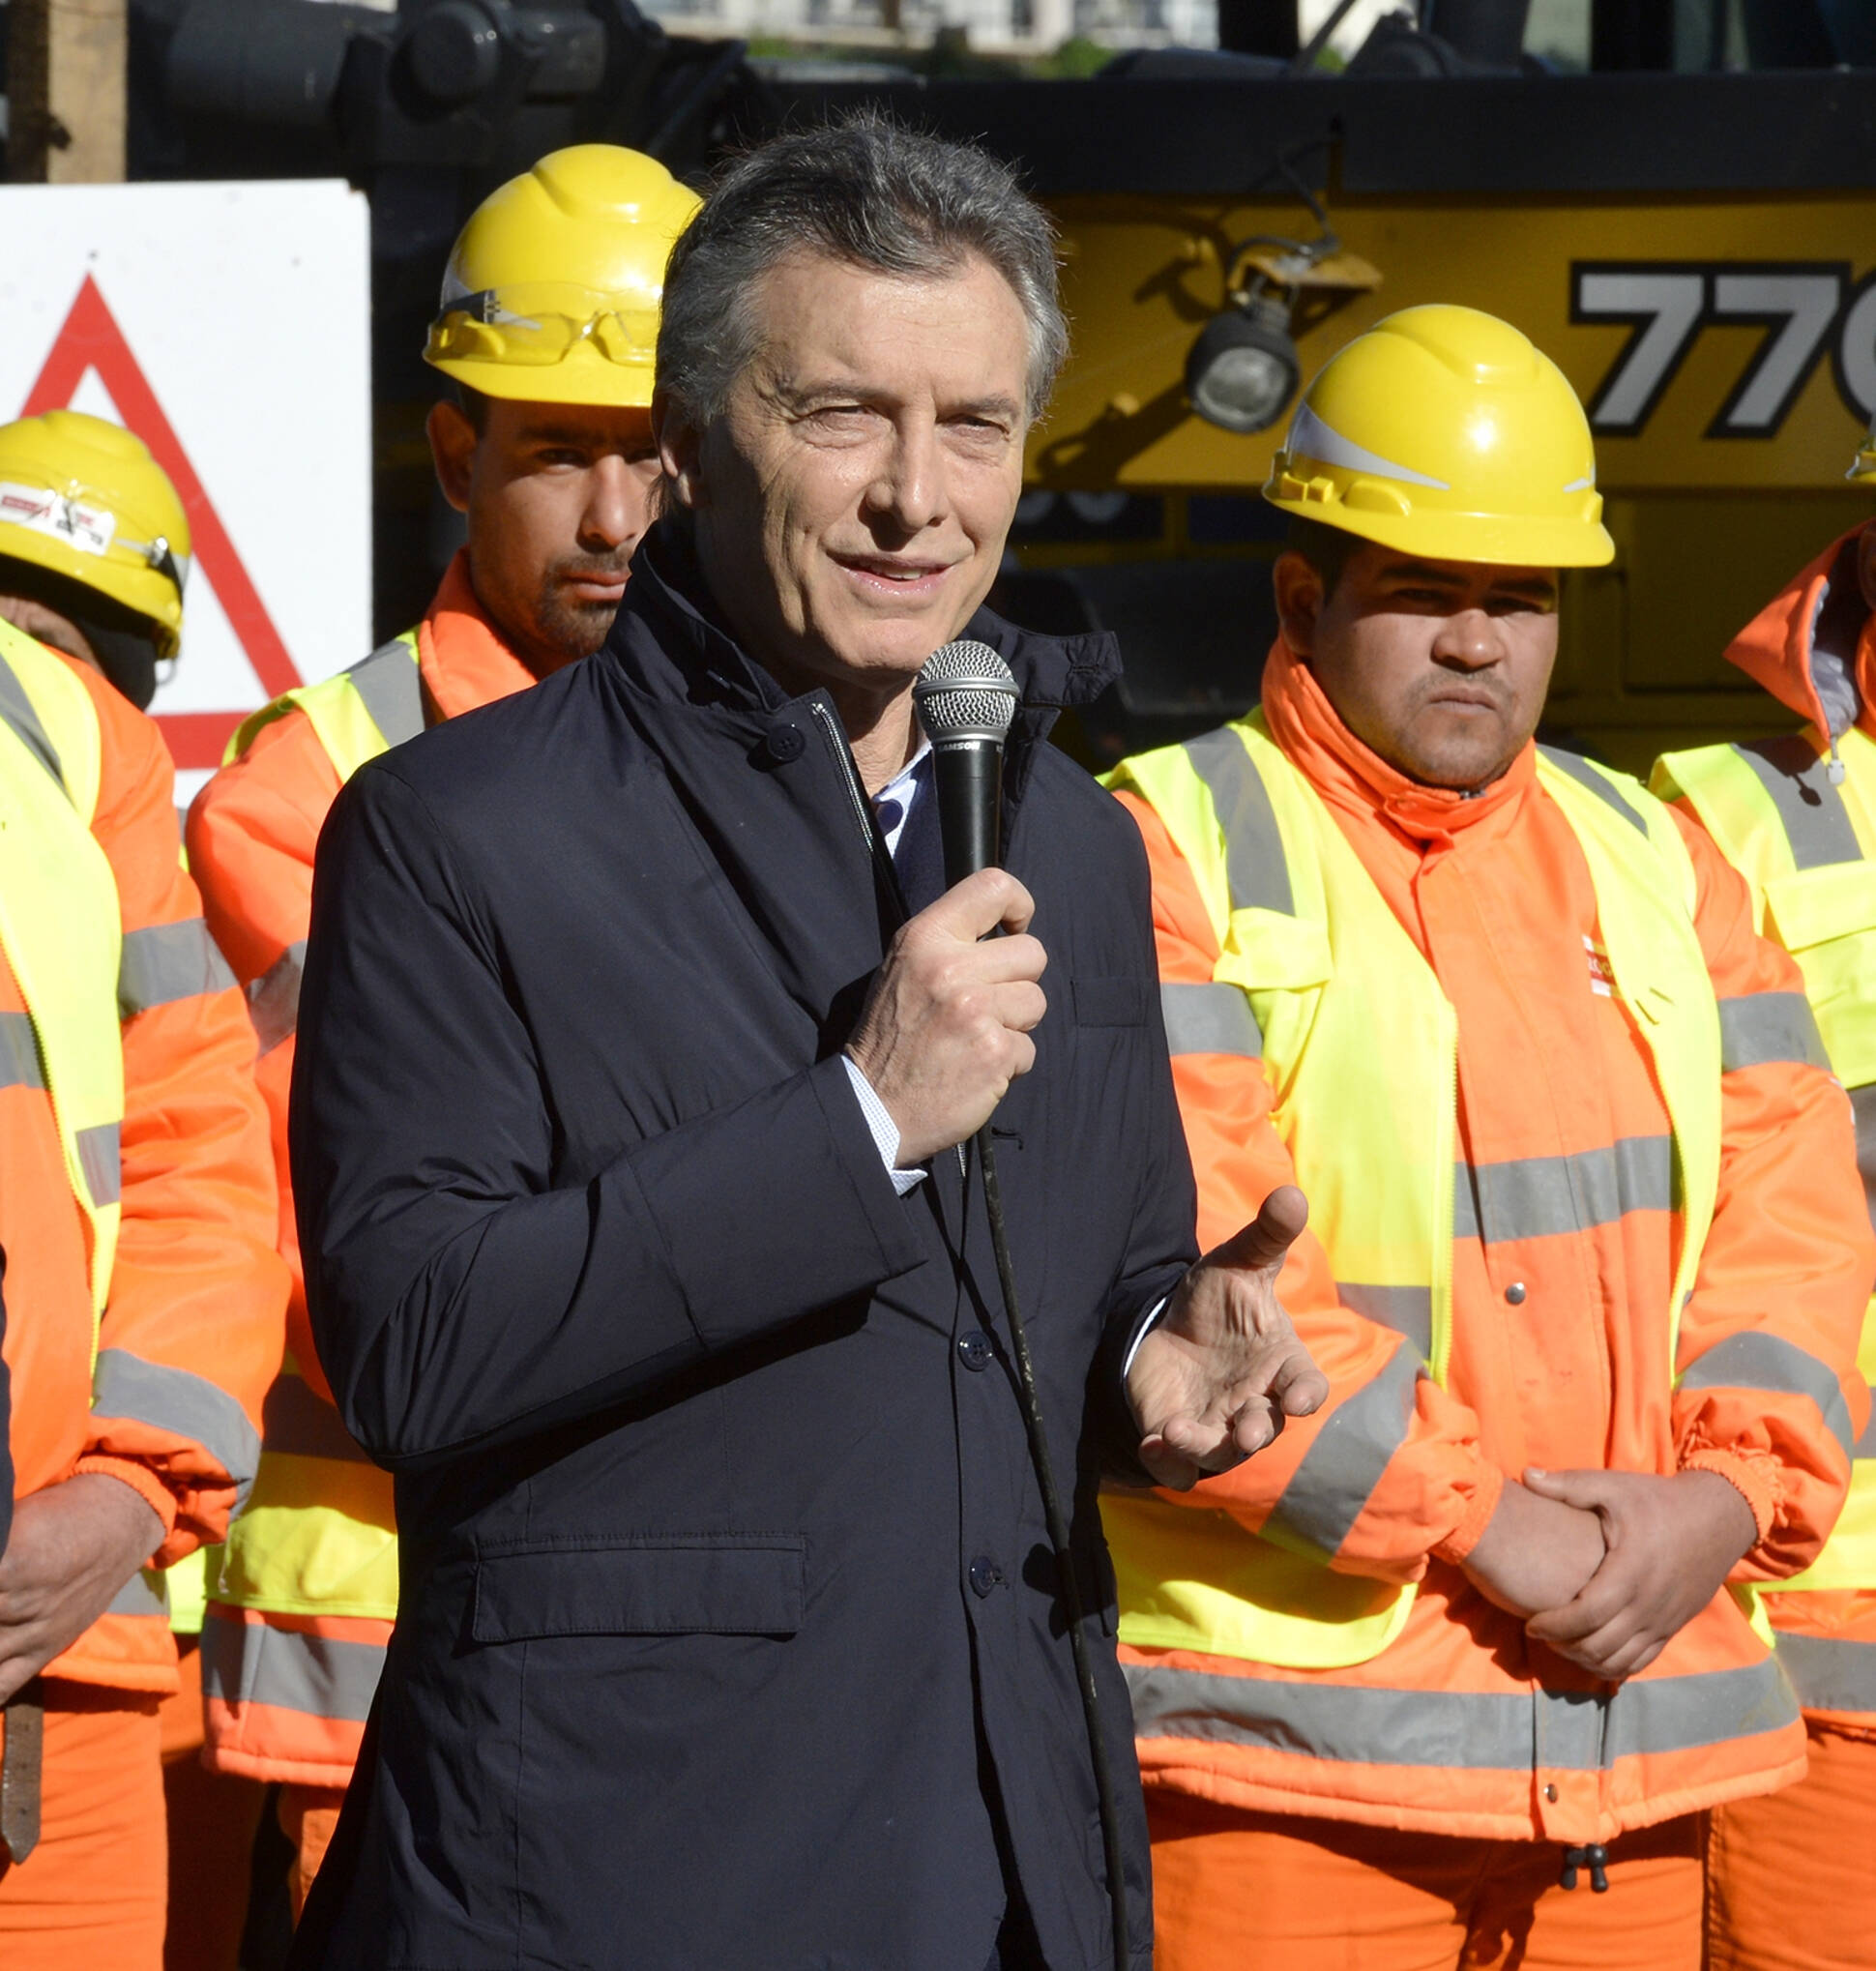 El Presidente presentó el inicio de las obras del viaducto del Ferrocarril Mitre